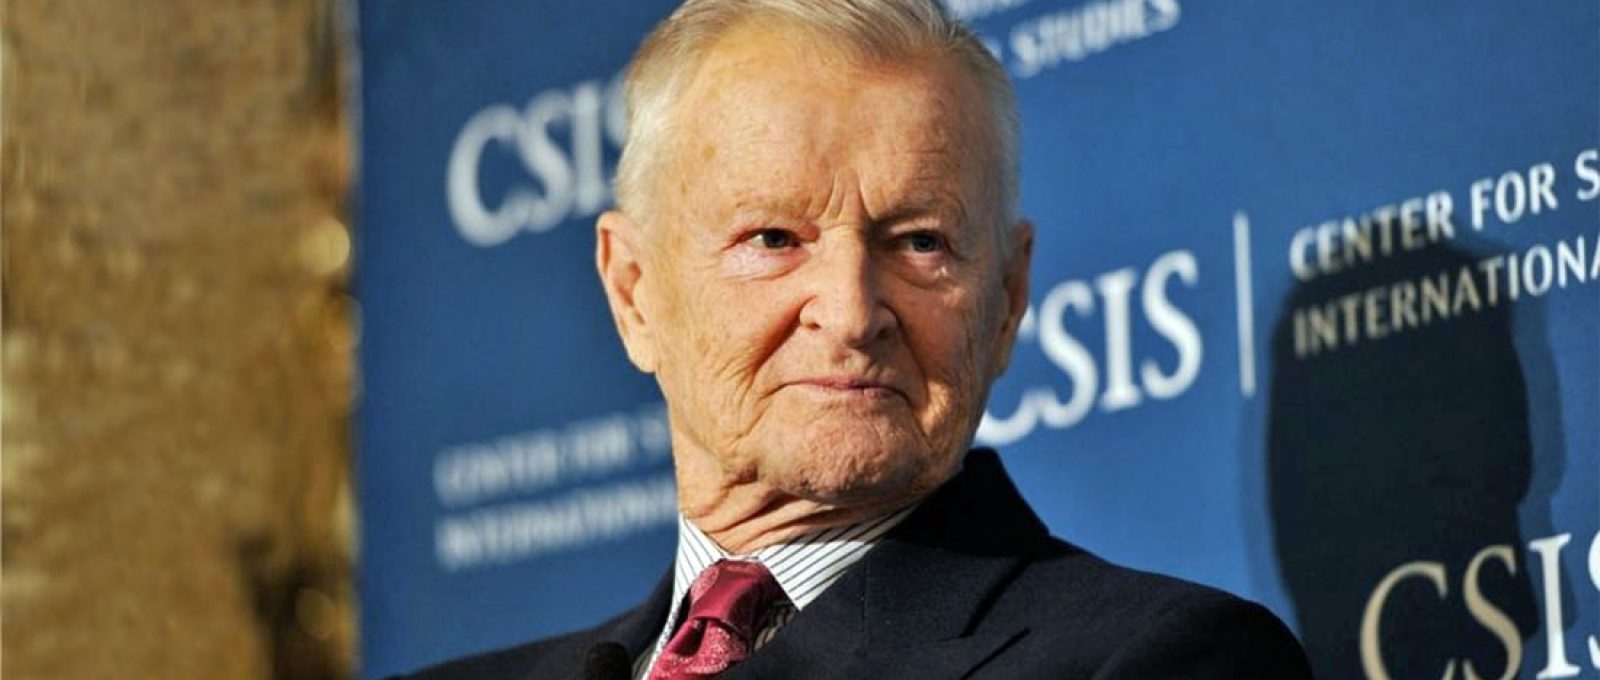 Zbigniew Brzezinski (CSIS).